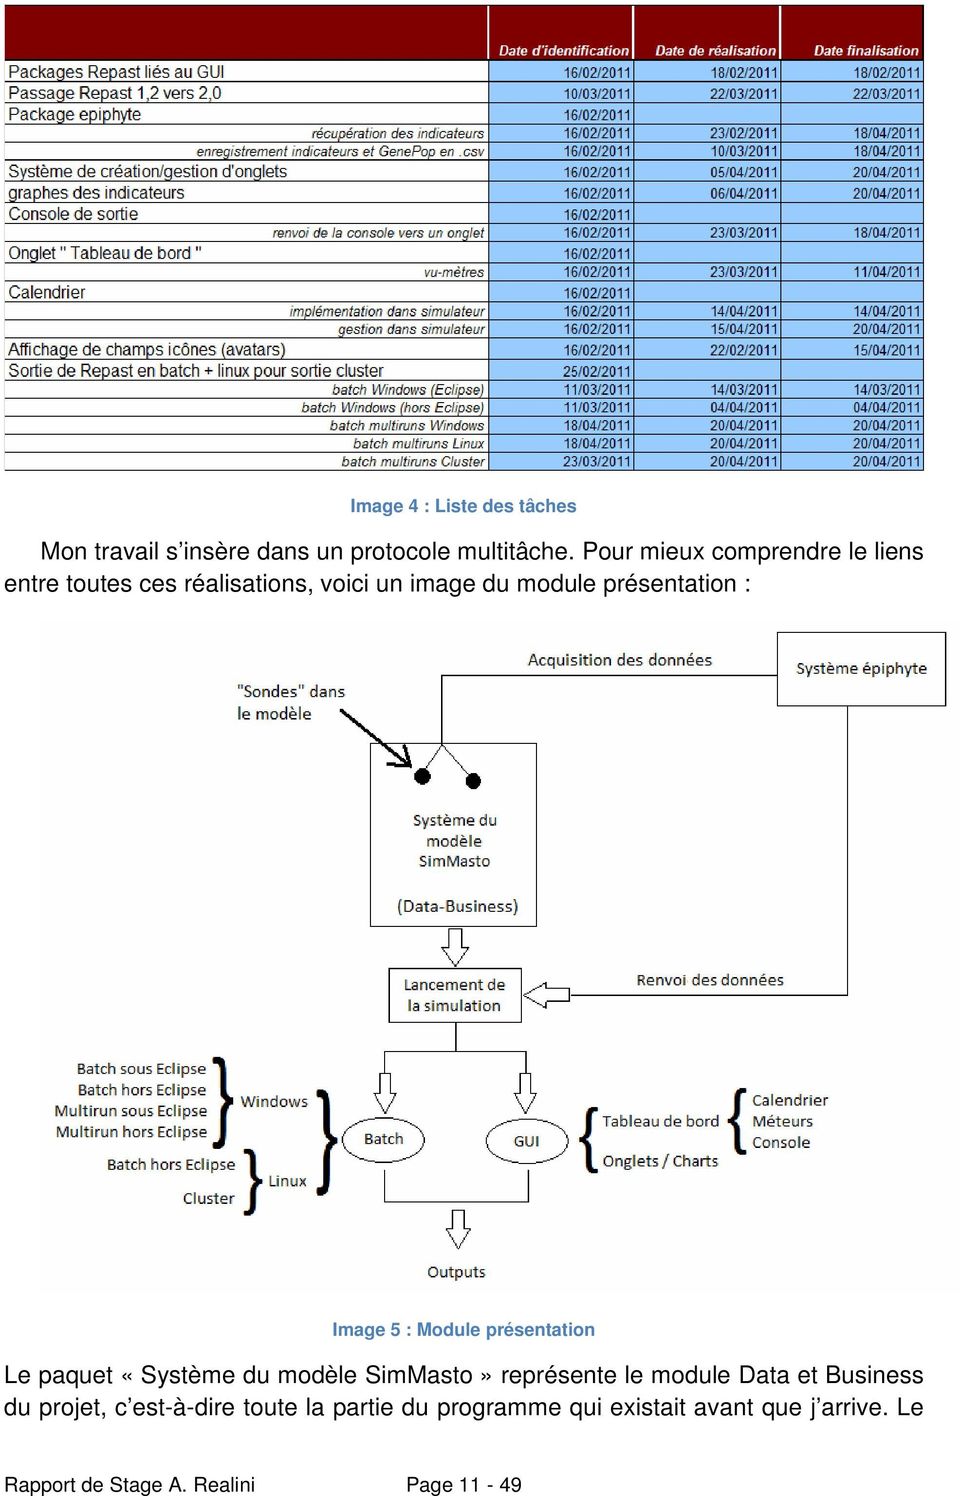 Image 5 : Module présentation Le paquet «Système du modèle SimMasto» représente le module Data et